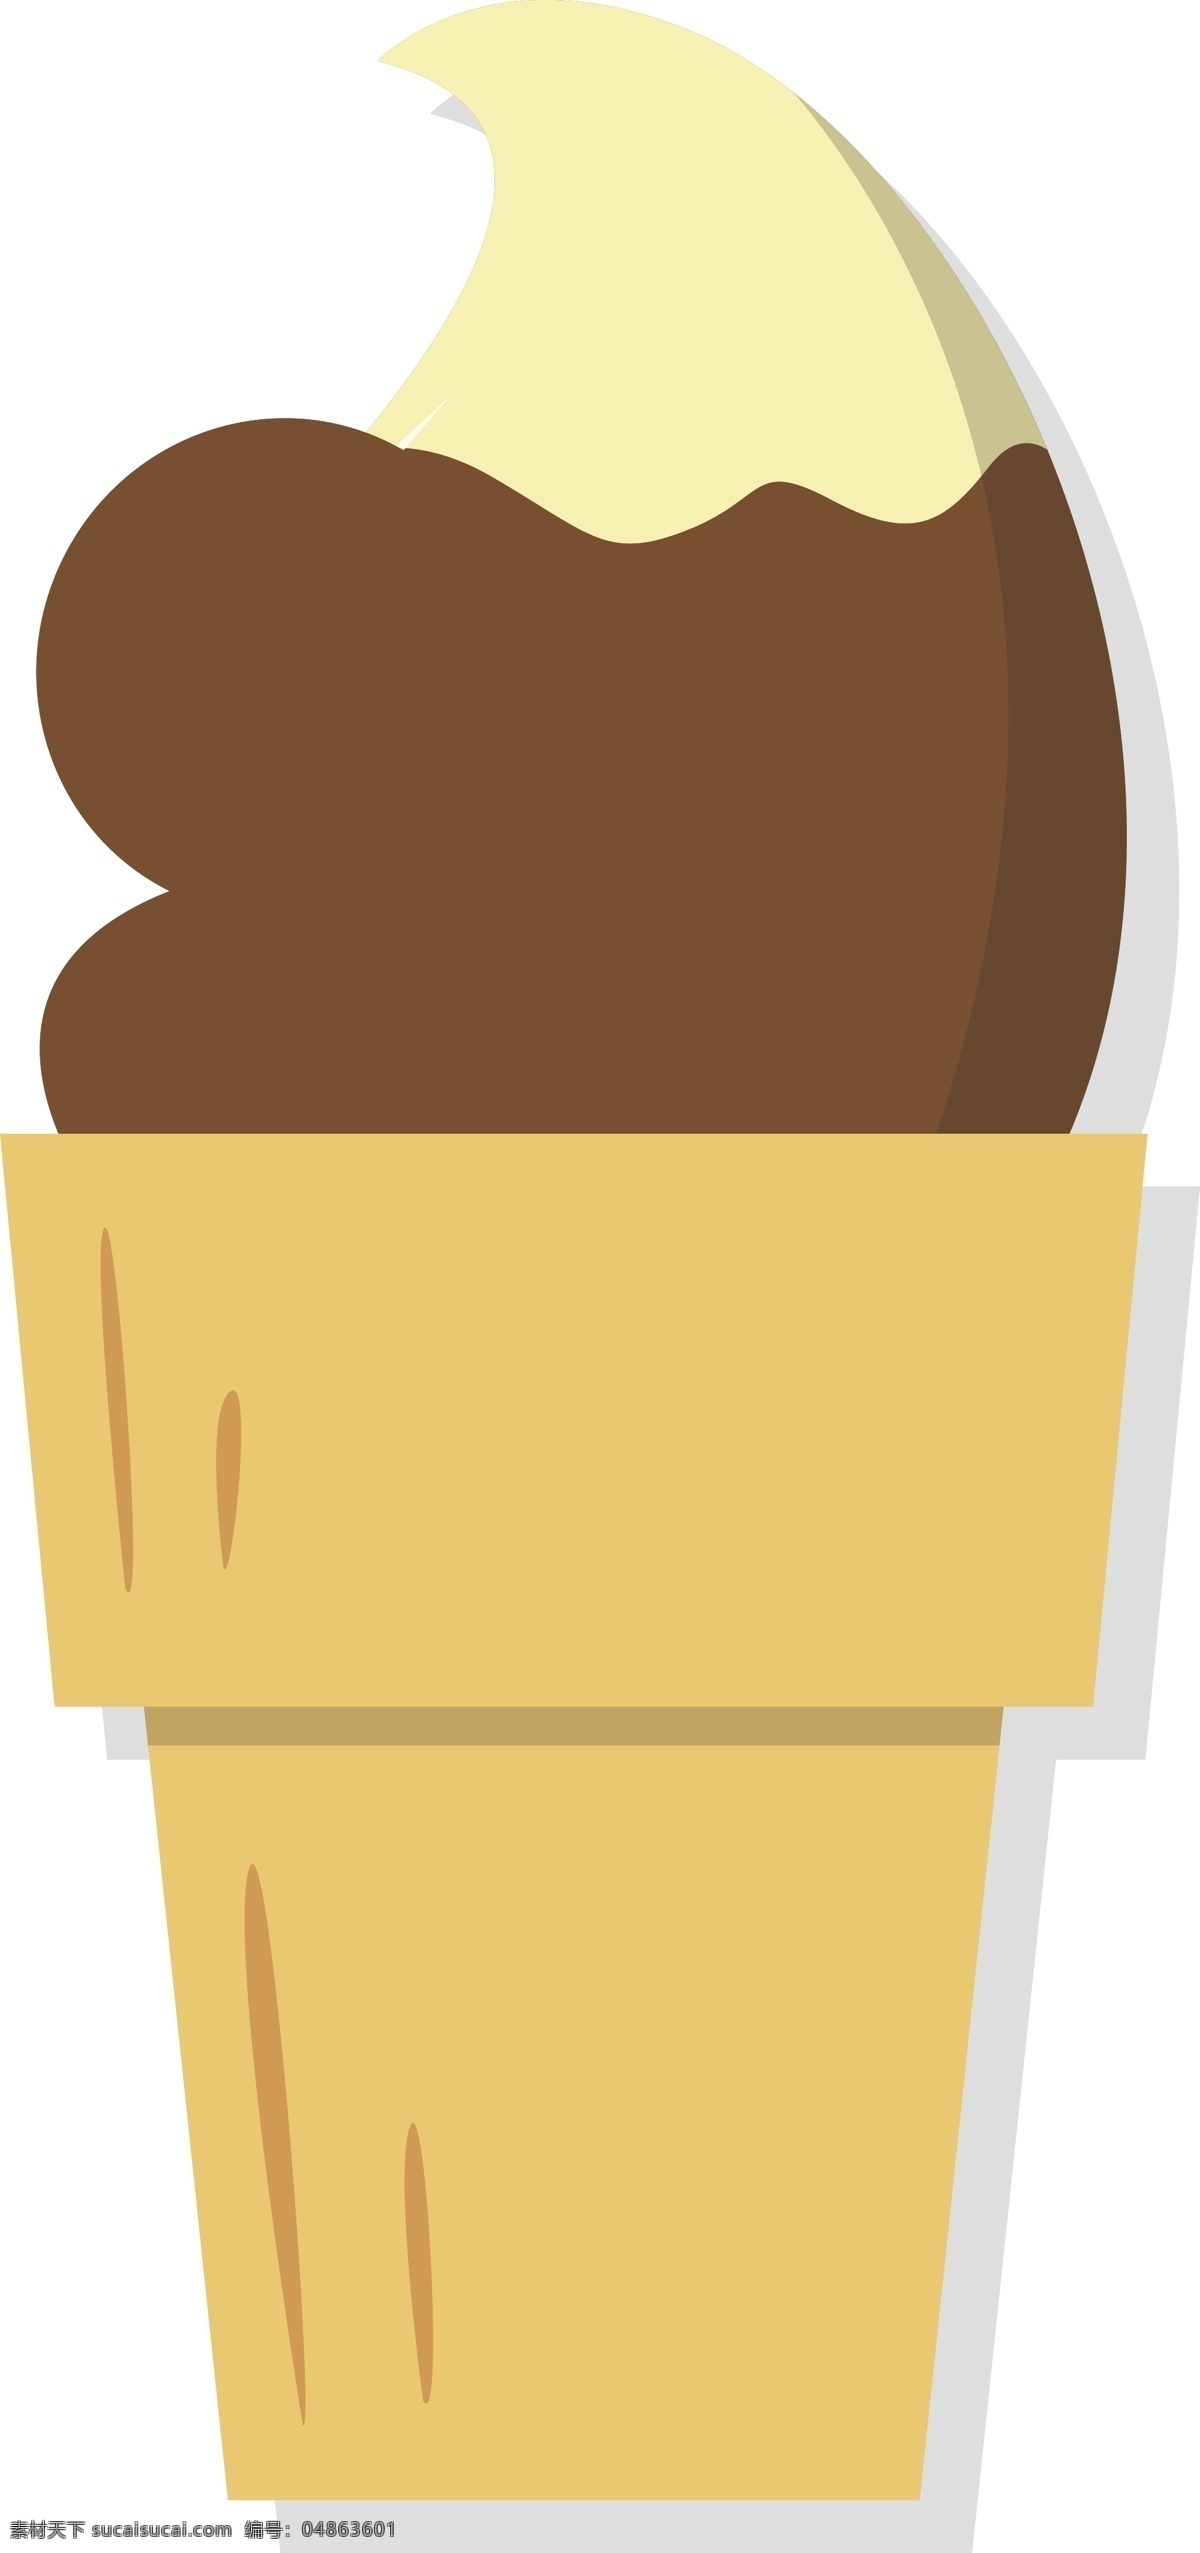 美味 巧克力 冰淇淋 造型 美味的冰淇淋 巧克力冰淇淋 手绘 甜筒 食物造型 贴图 奶油